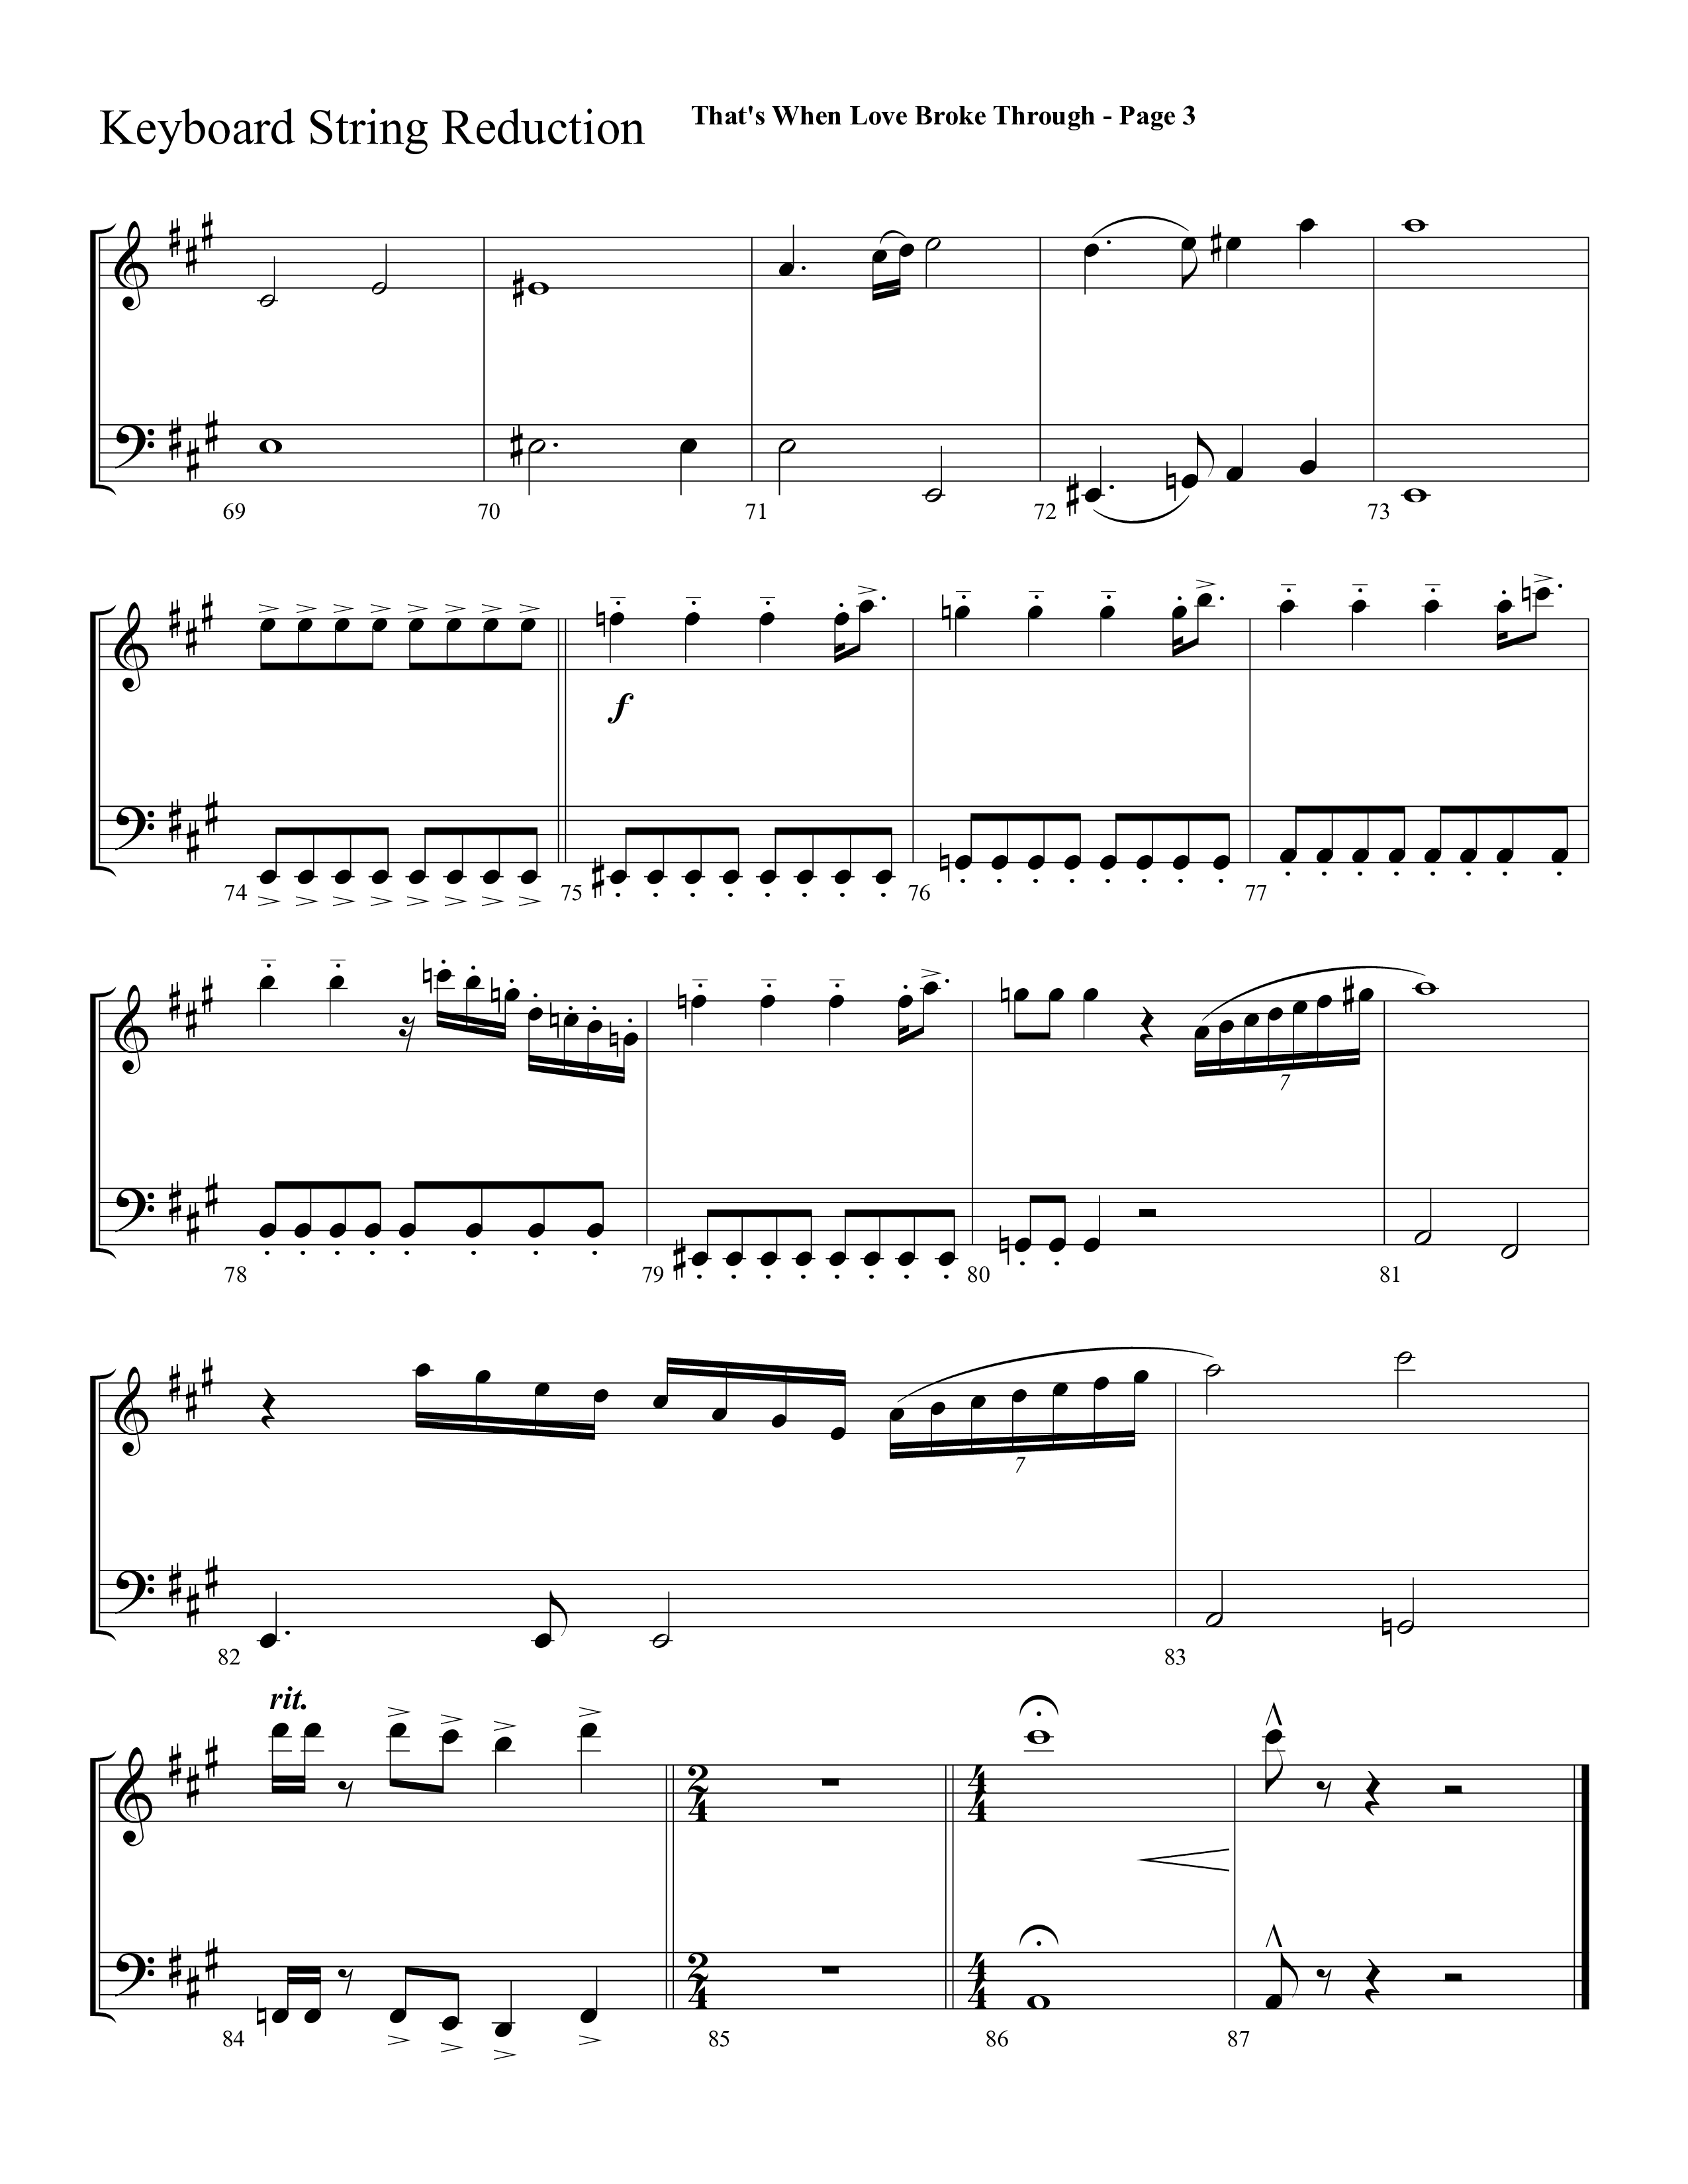 That's When Love Broke Through (Choral Anthem SATB) String Reduction (Lifeway Choral / Arr. Mark Willard / Orch. Stephen K. Hand / Orch. Phillip Keveren)